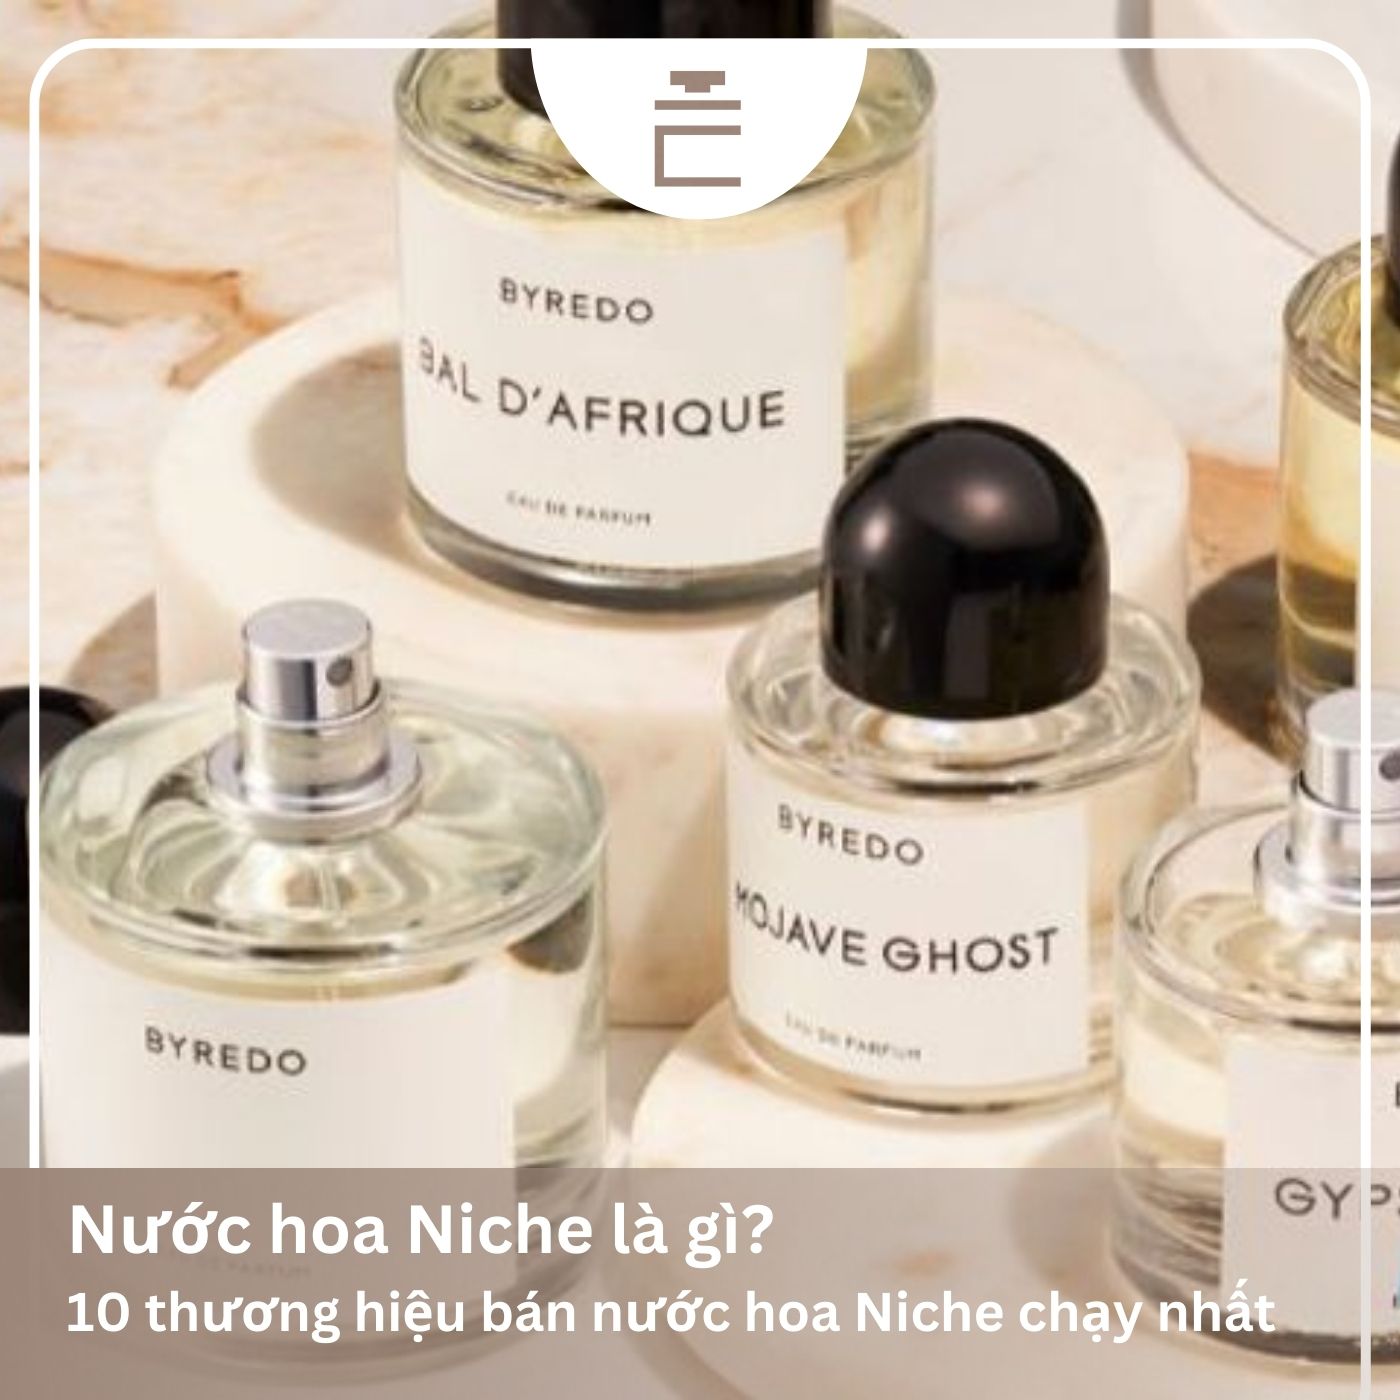 Nước hoa Niche là gì? Top 10 chai nước hoa Niche cao cấp